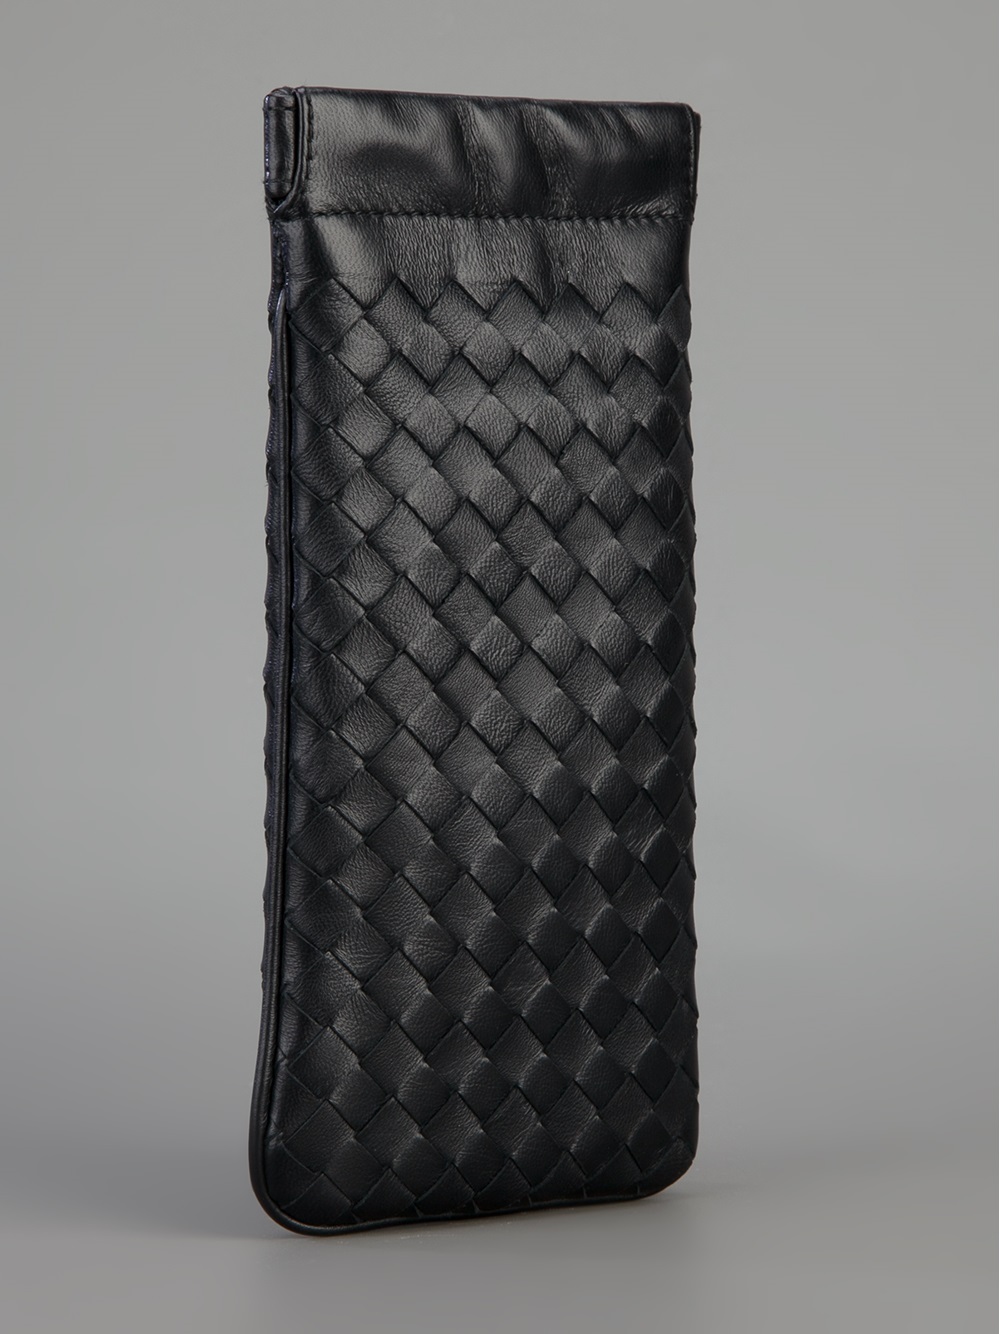 Bottega Veneta Woven Leather Glasses Case in Black | Lyst